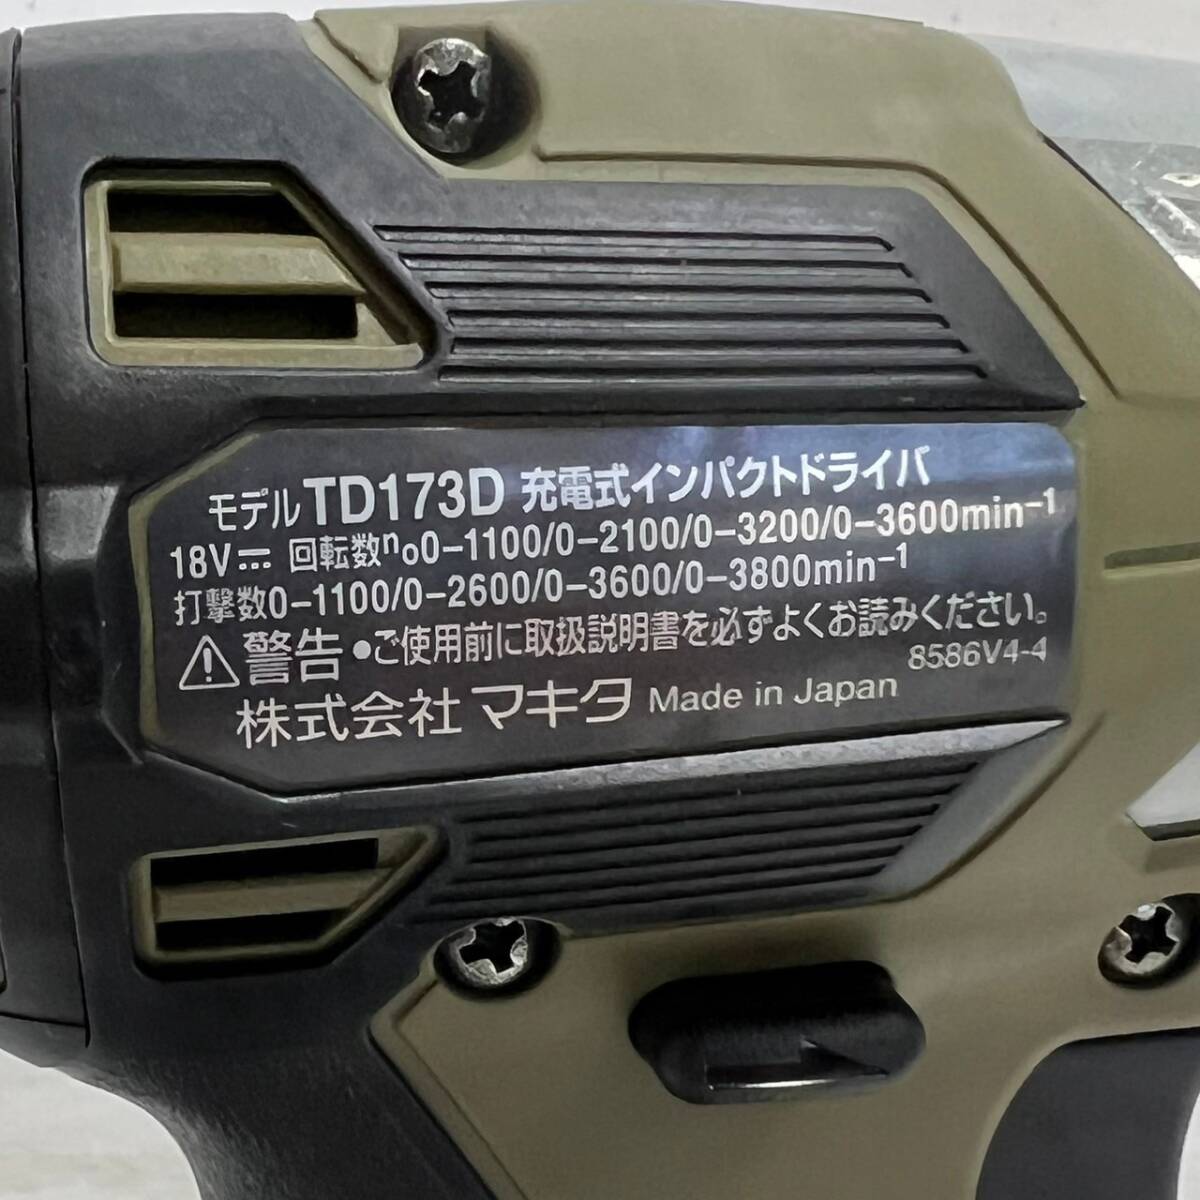 ★未使用 makita マキタ 充電式インパクトドライバ TD173D 本体のみ 18v 人気色 オリーブ コードレス 領収OK w0419-10